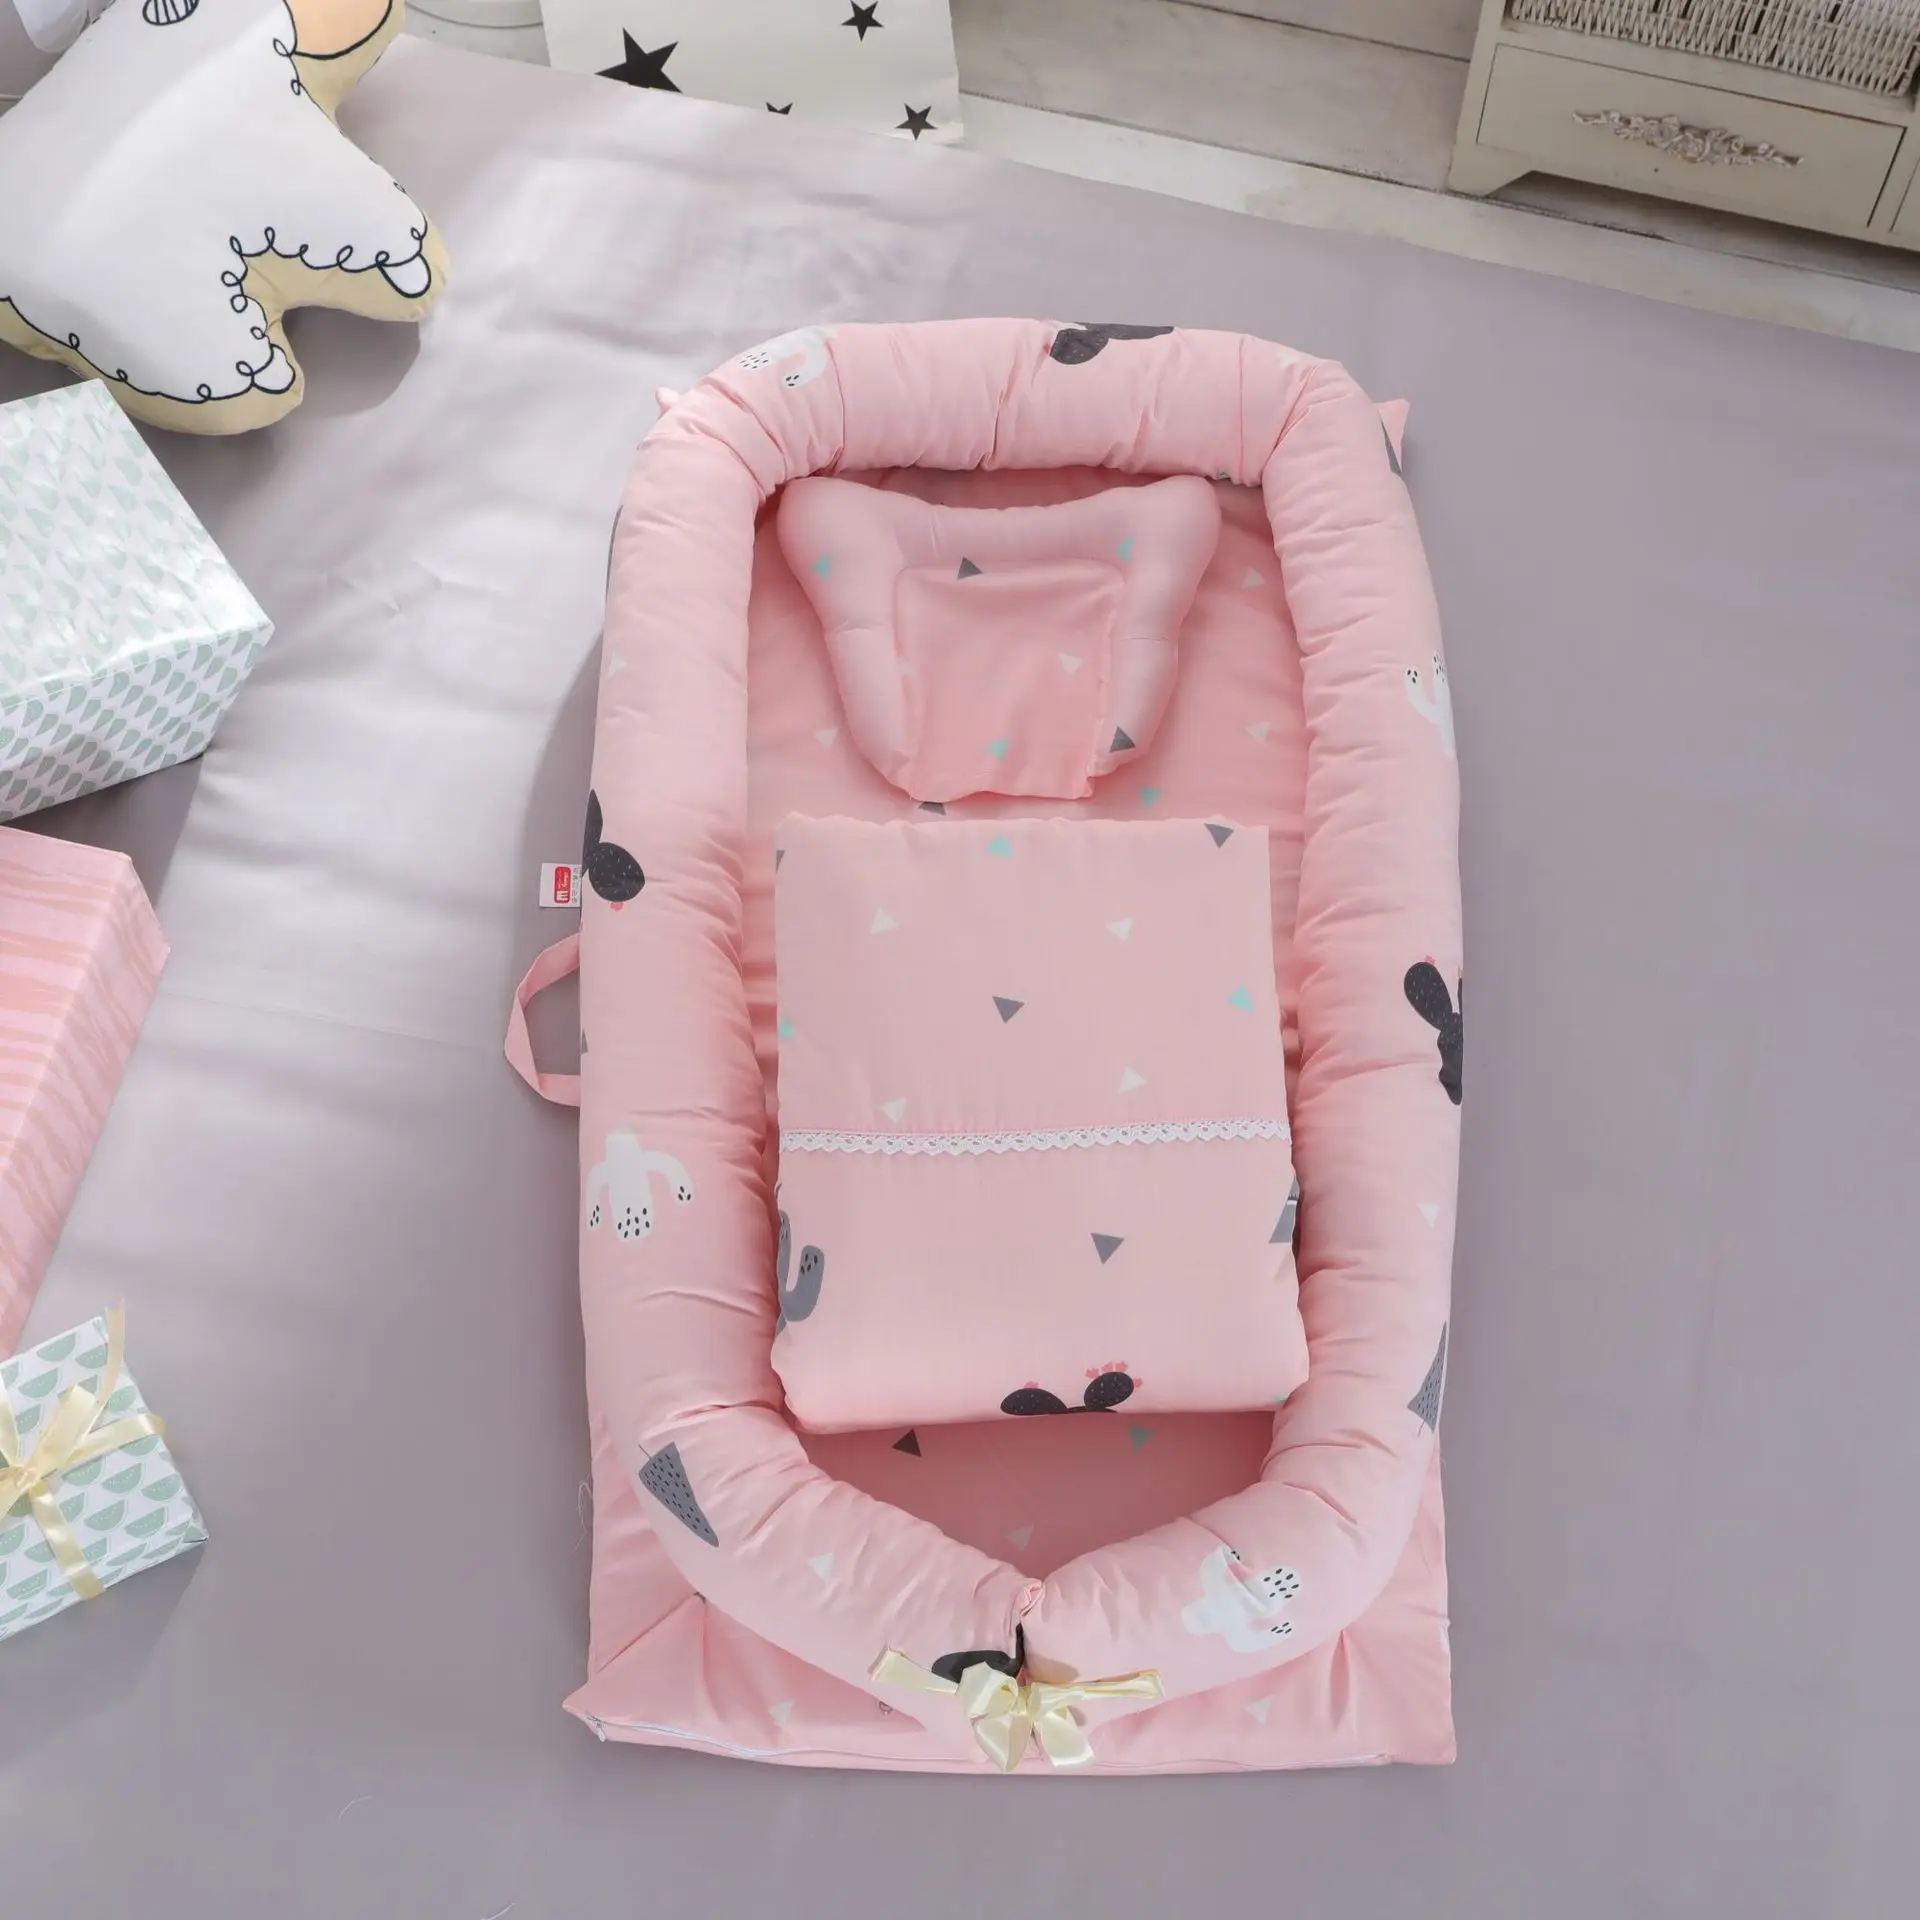 Портативная складная детская кроватка с принтом кактуса для новорожденных, бионическая матка, кровать для путешествий, детское гнездо с одеялом - Цвет: xianrenzhang